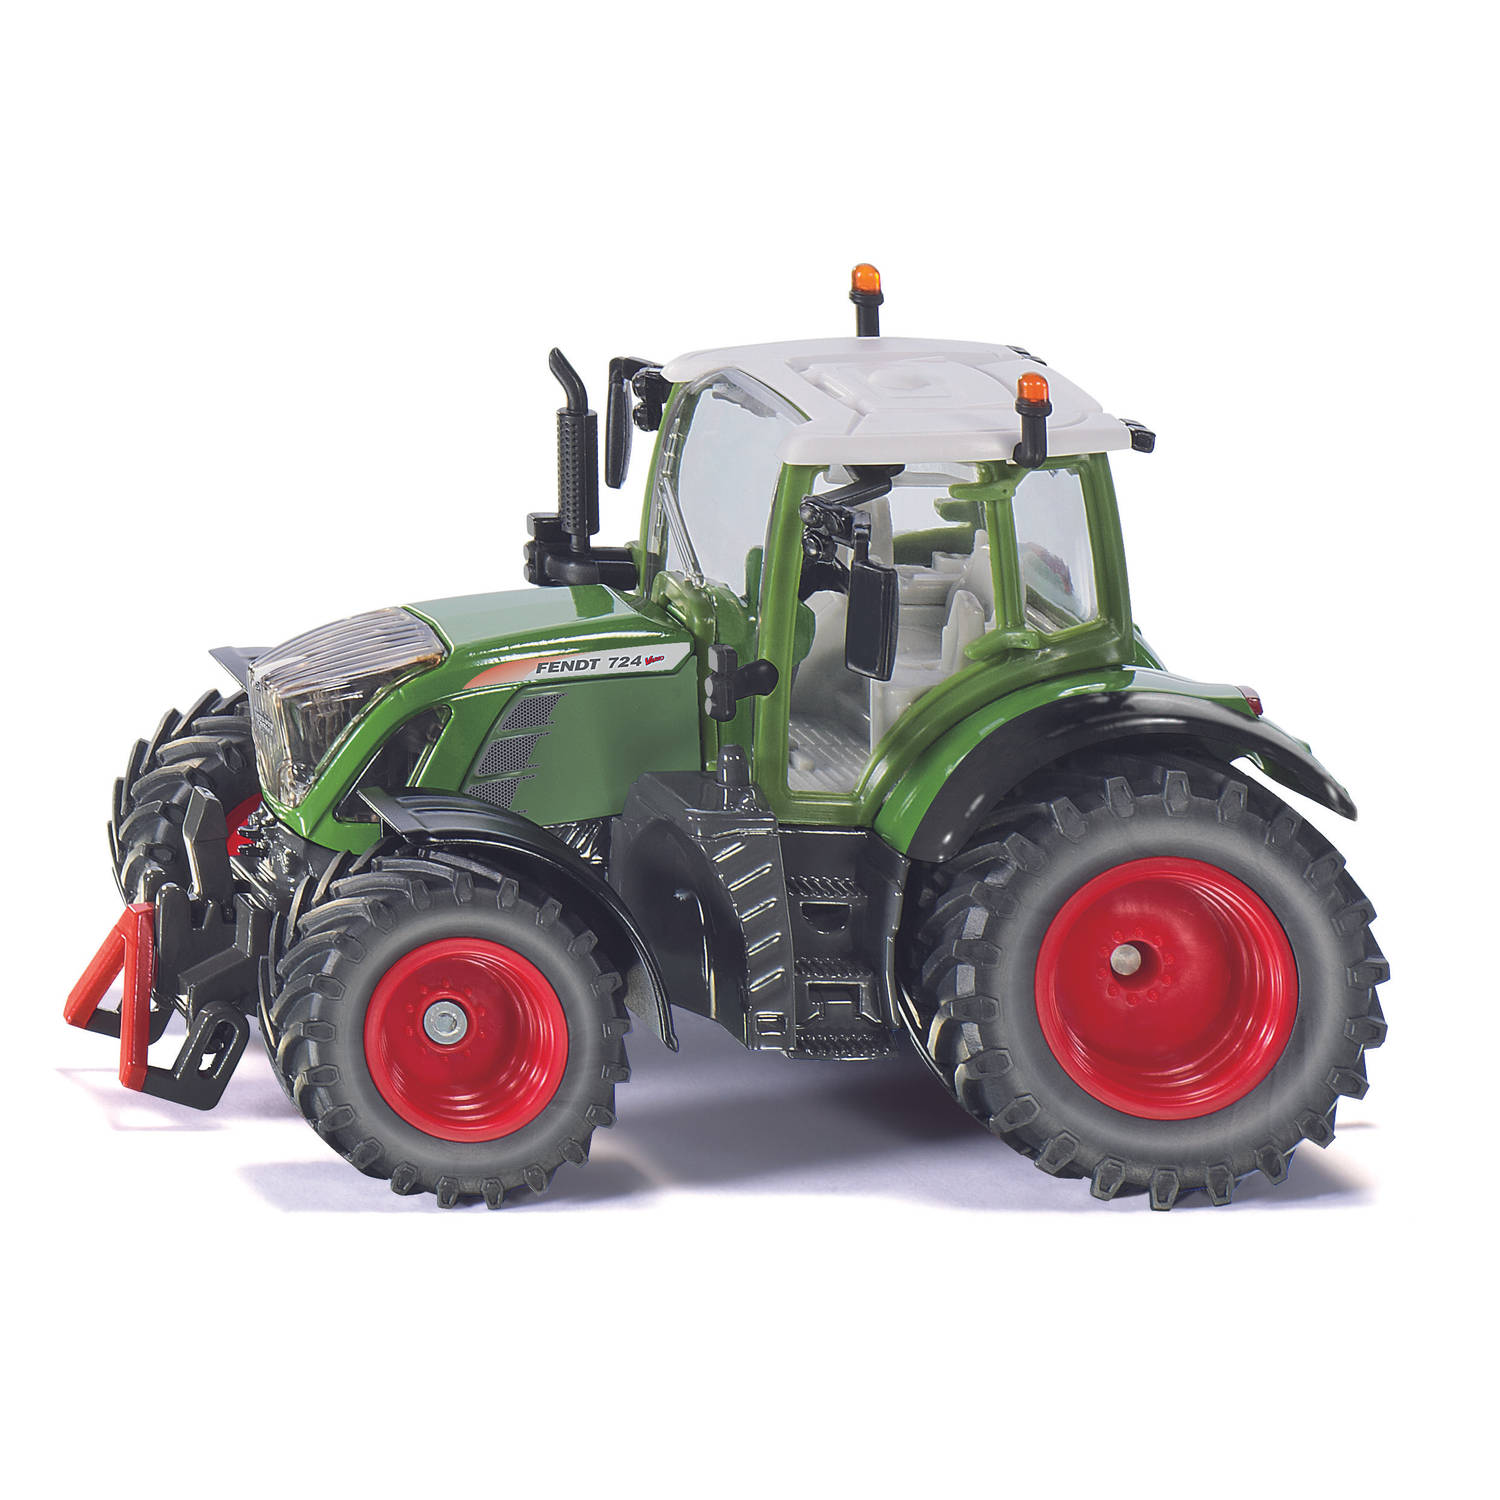 SIKU Fendt 724 Vario-tractor - 3285